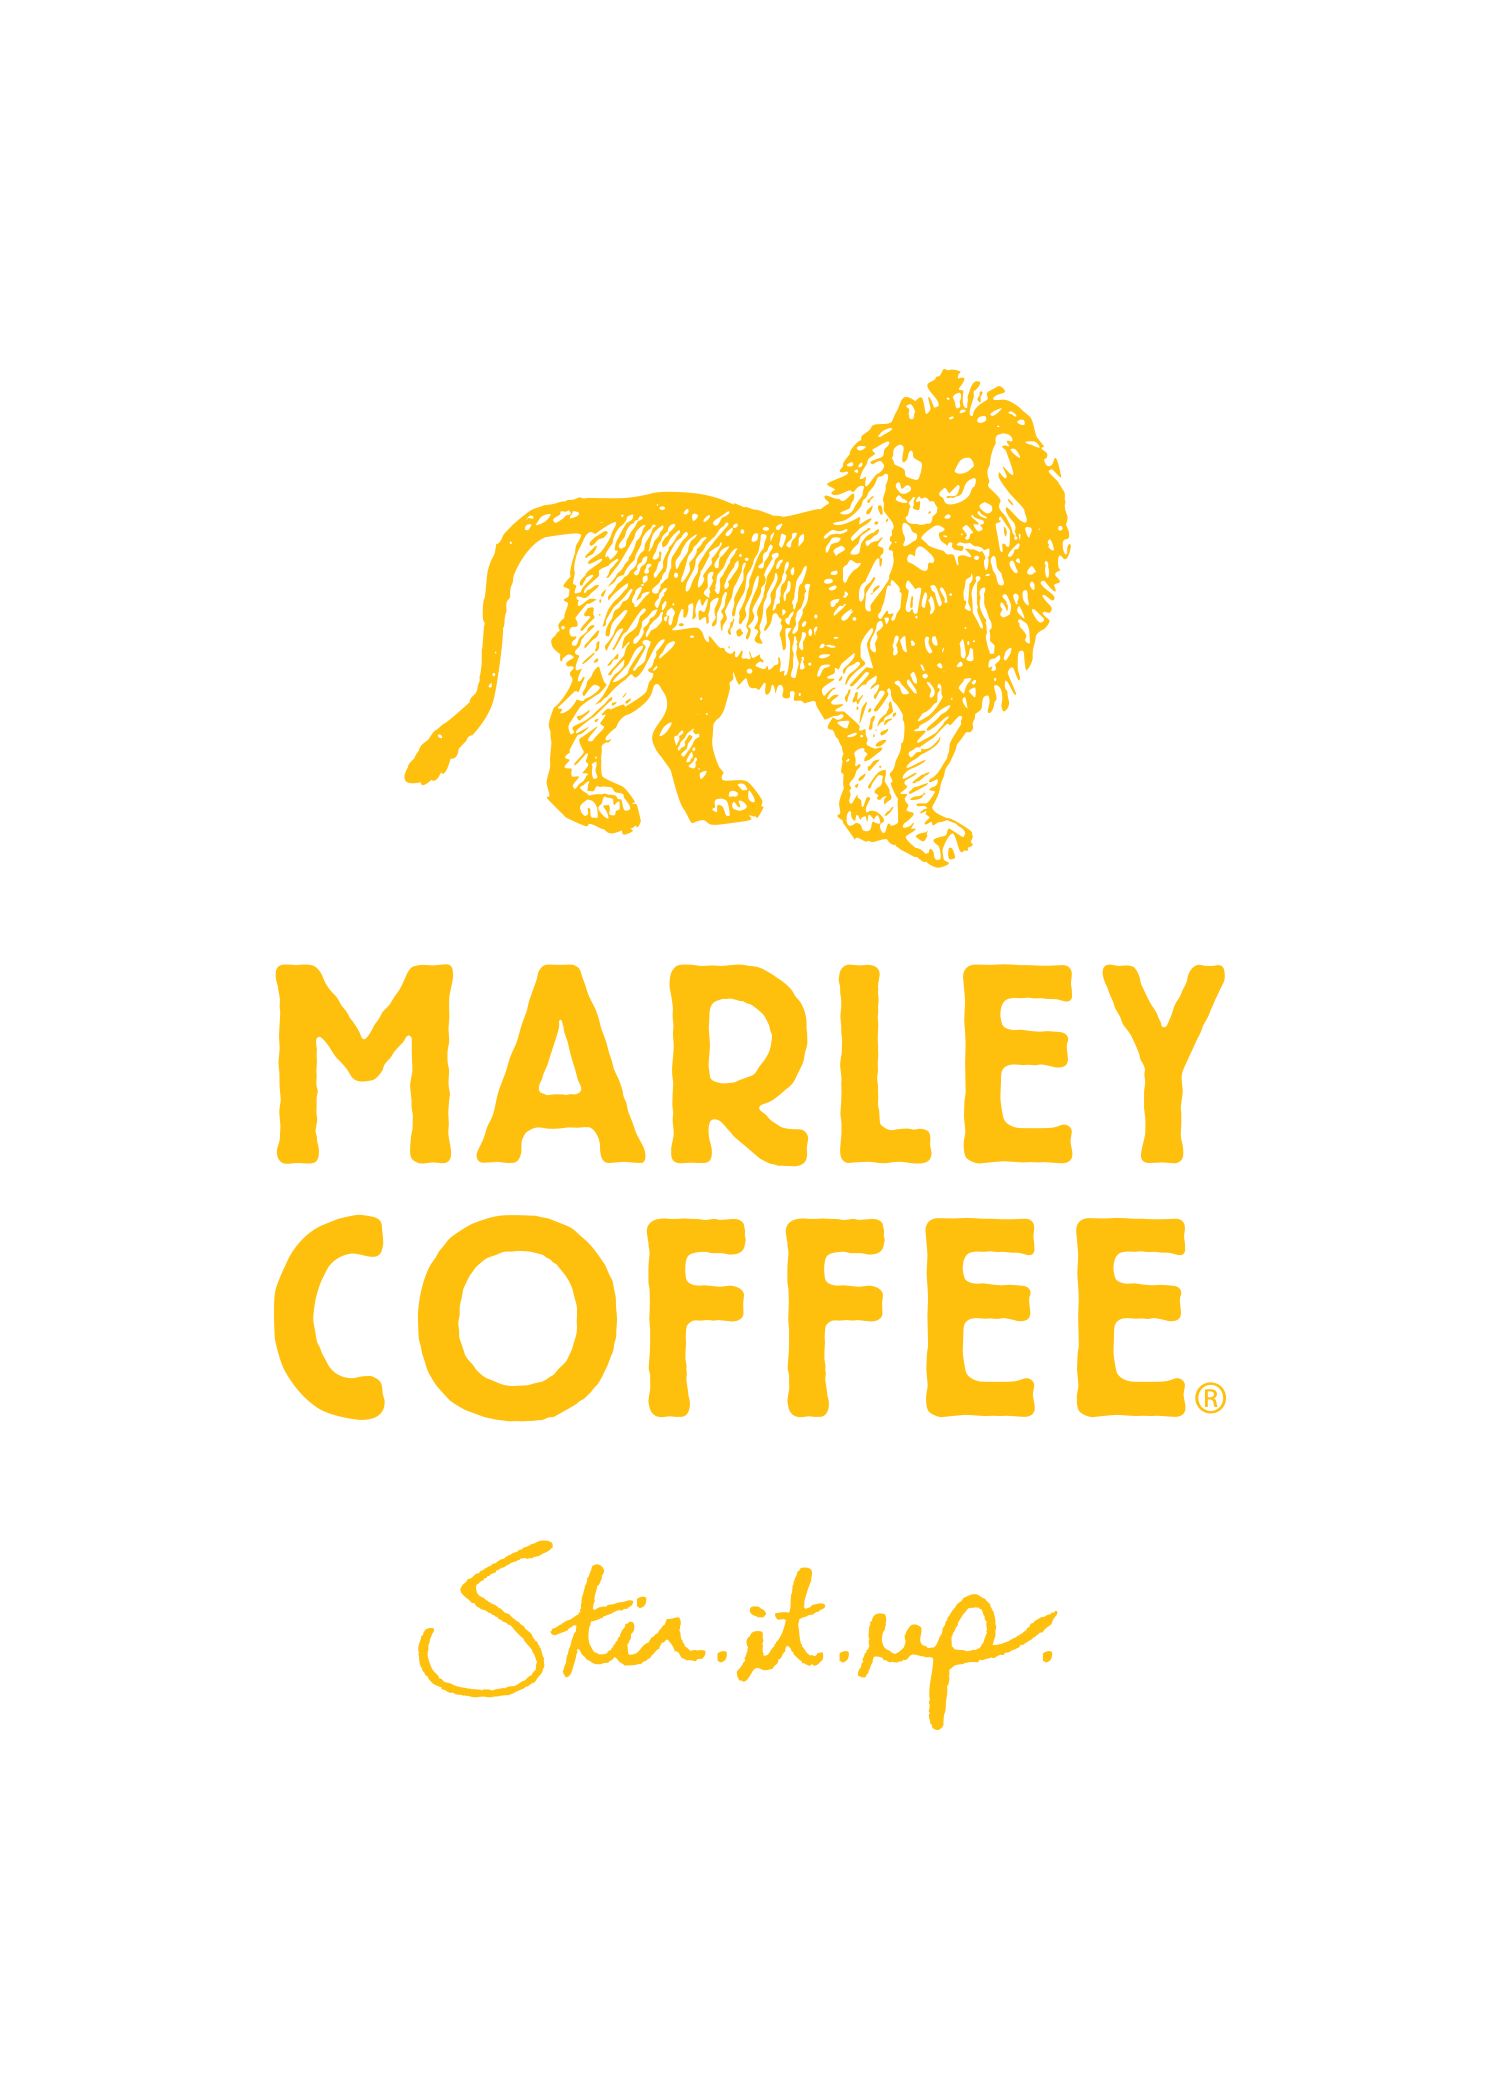 Marley Coffee Announ